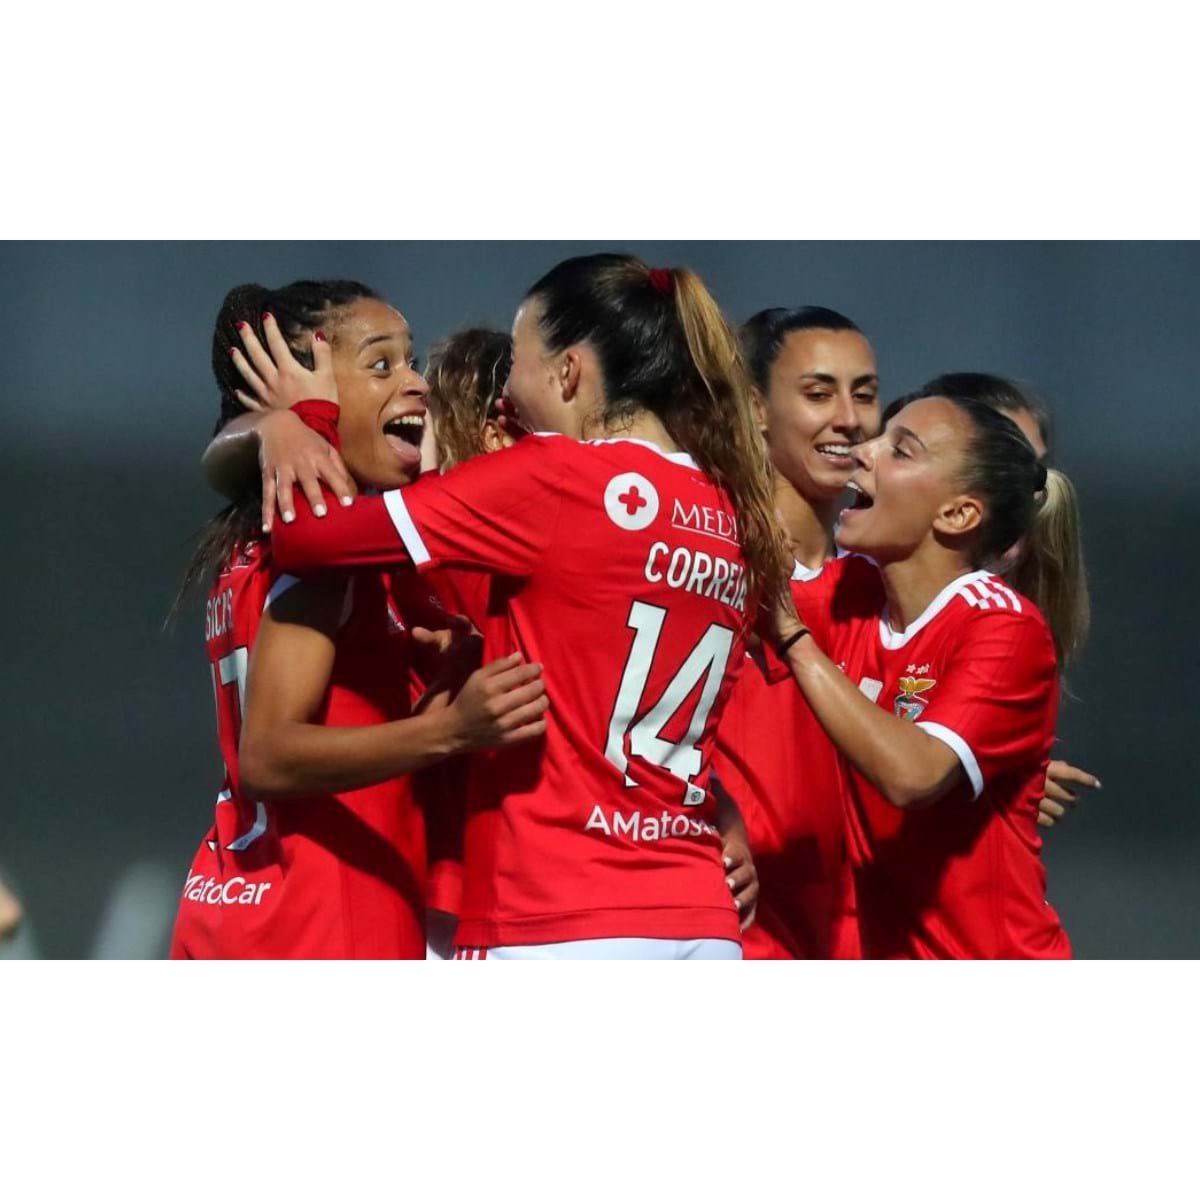 Benfica histórico sobe ao 12º lugar do ranking feminino de clubes da UEFA